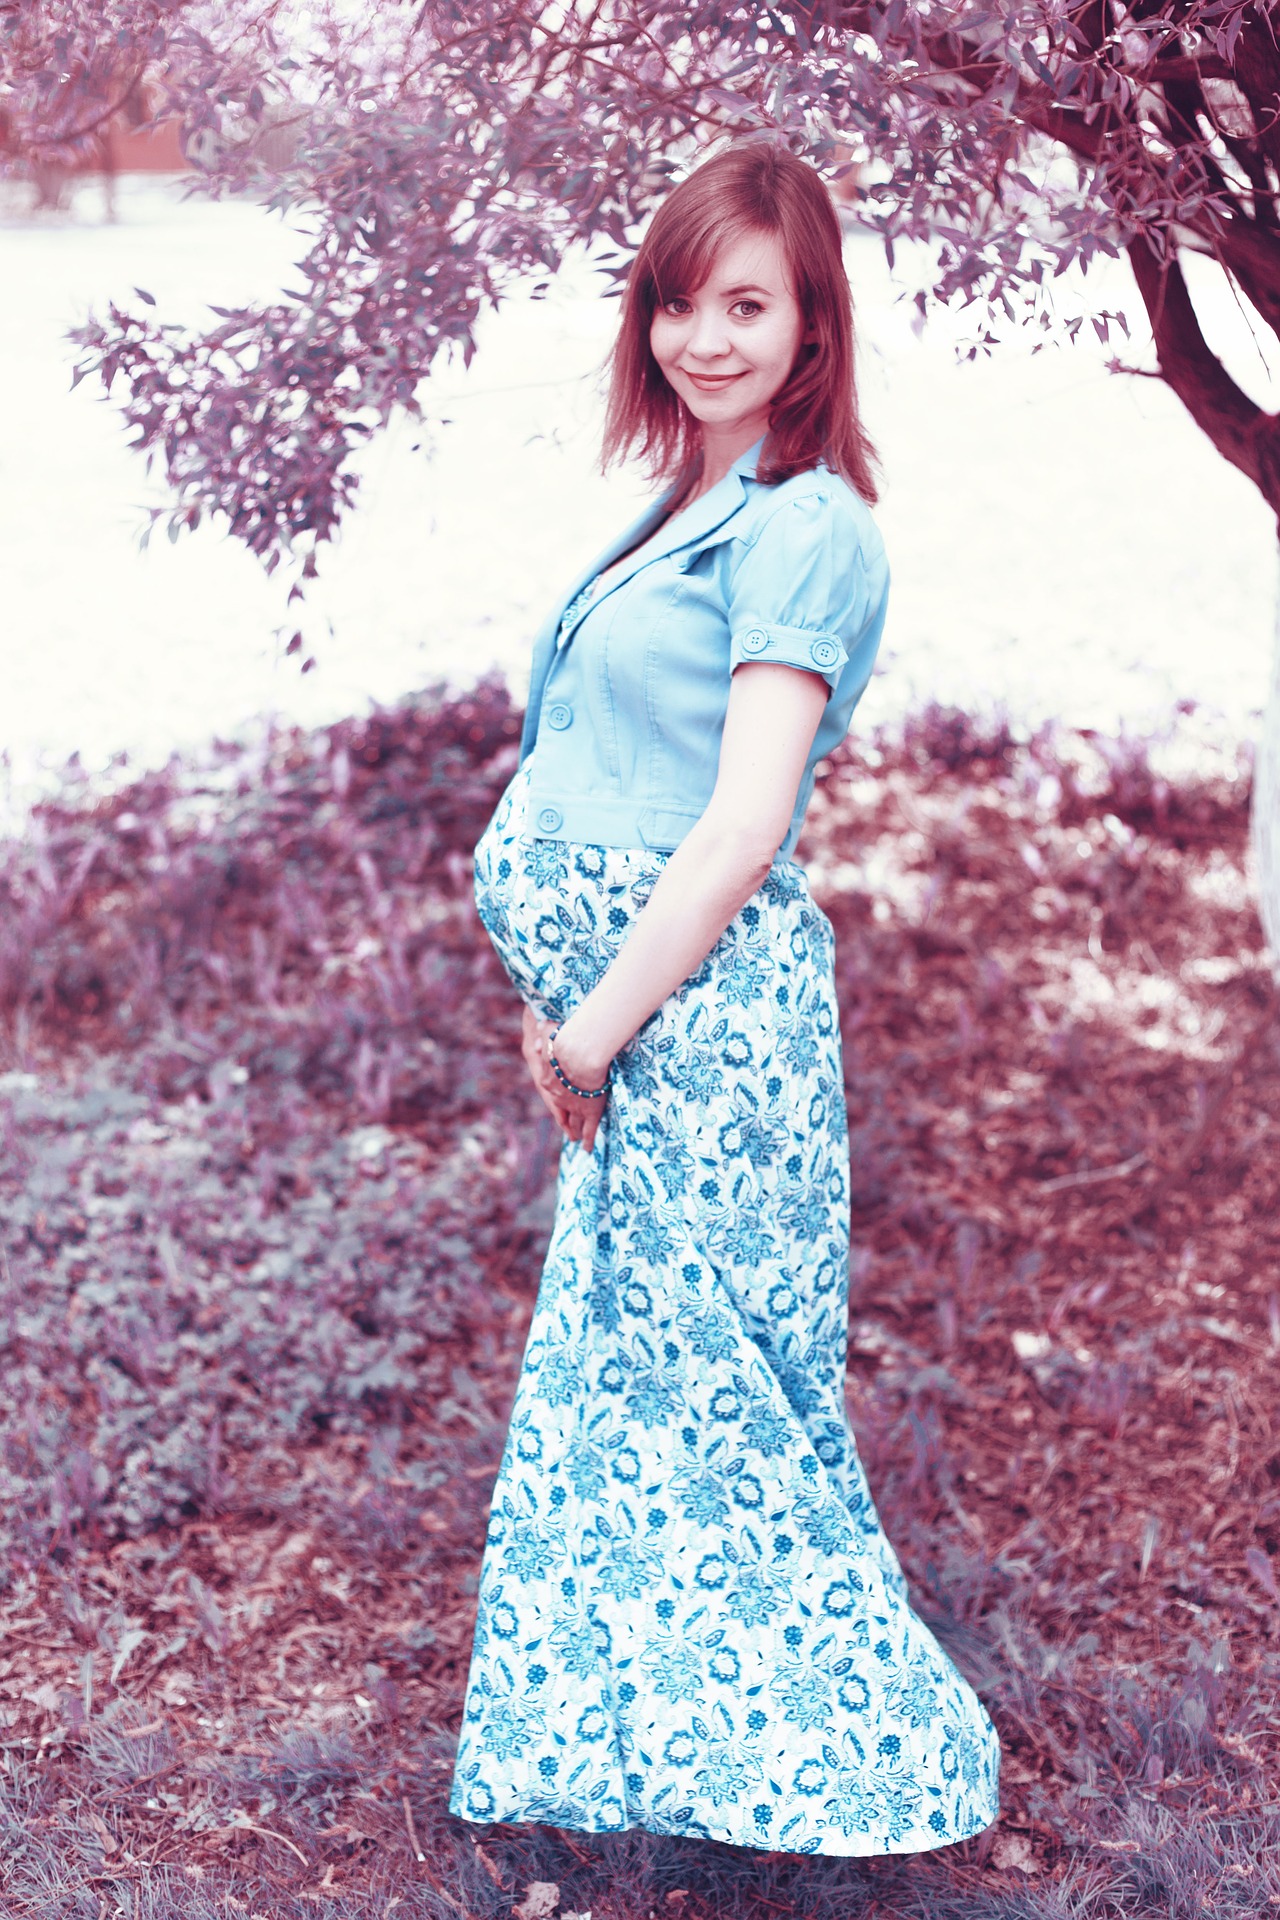 Pregnant woman photo